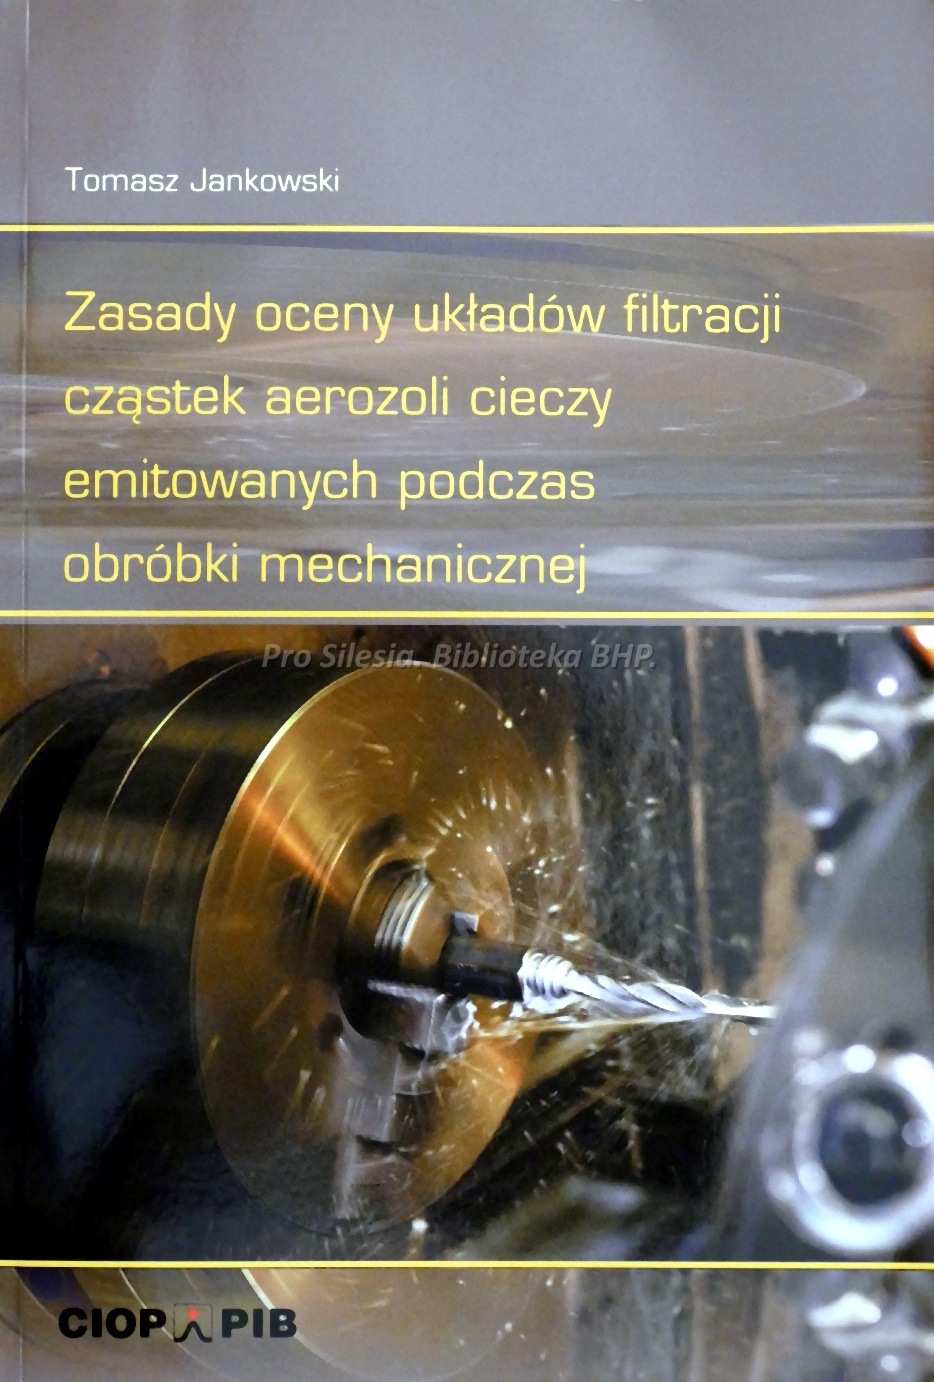 Zasady oceny układów filtracji cząstek aerozoli cieczy emitowanych podczas obróbki mechanicznej, wyd. CIOP-PIB